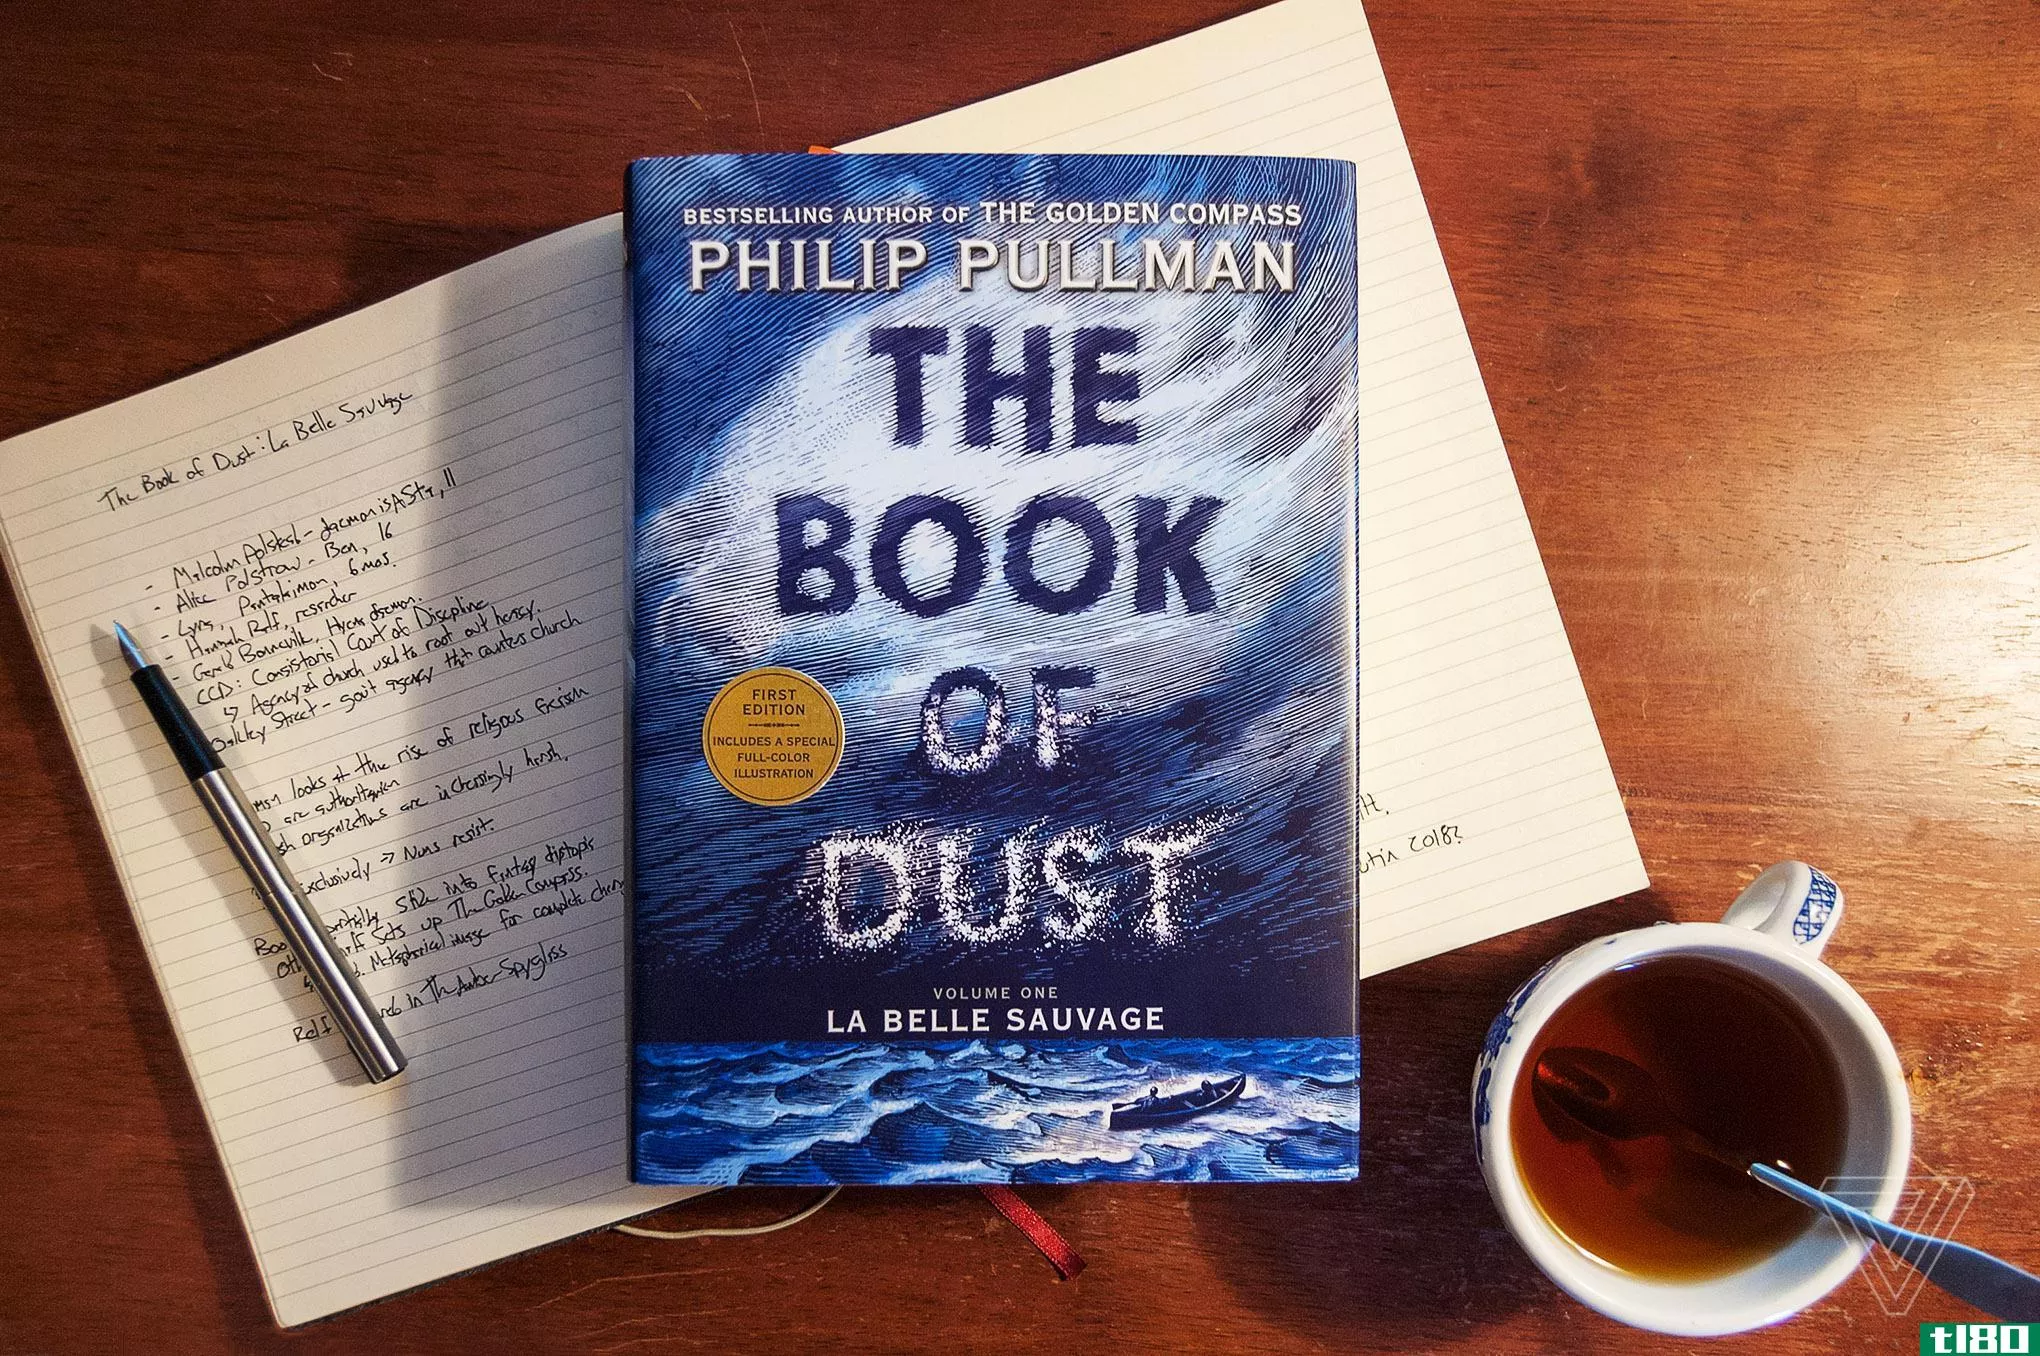 菲利普·普尔曼的《尘埃之书》是一部充满矛盾却值得一试的奇幻冒险